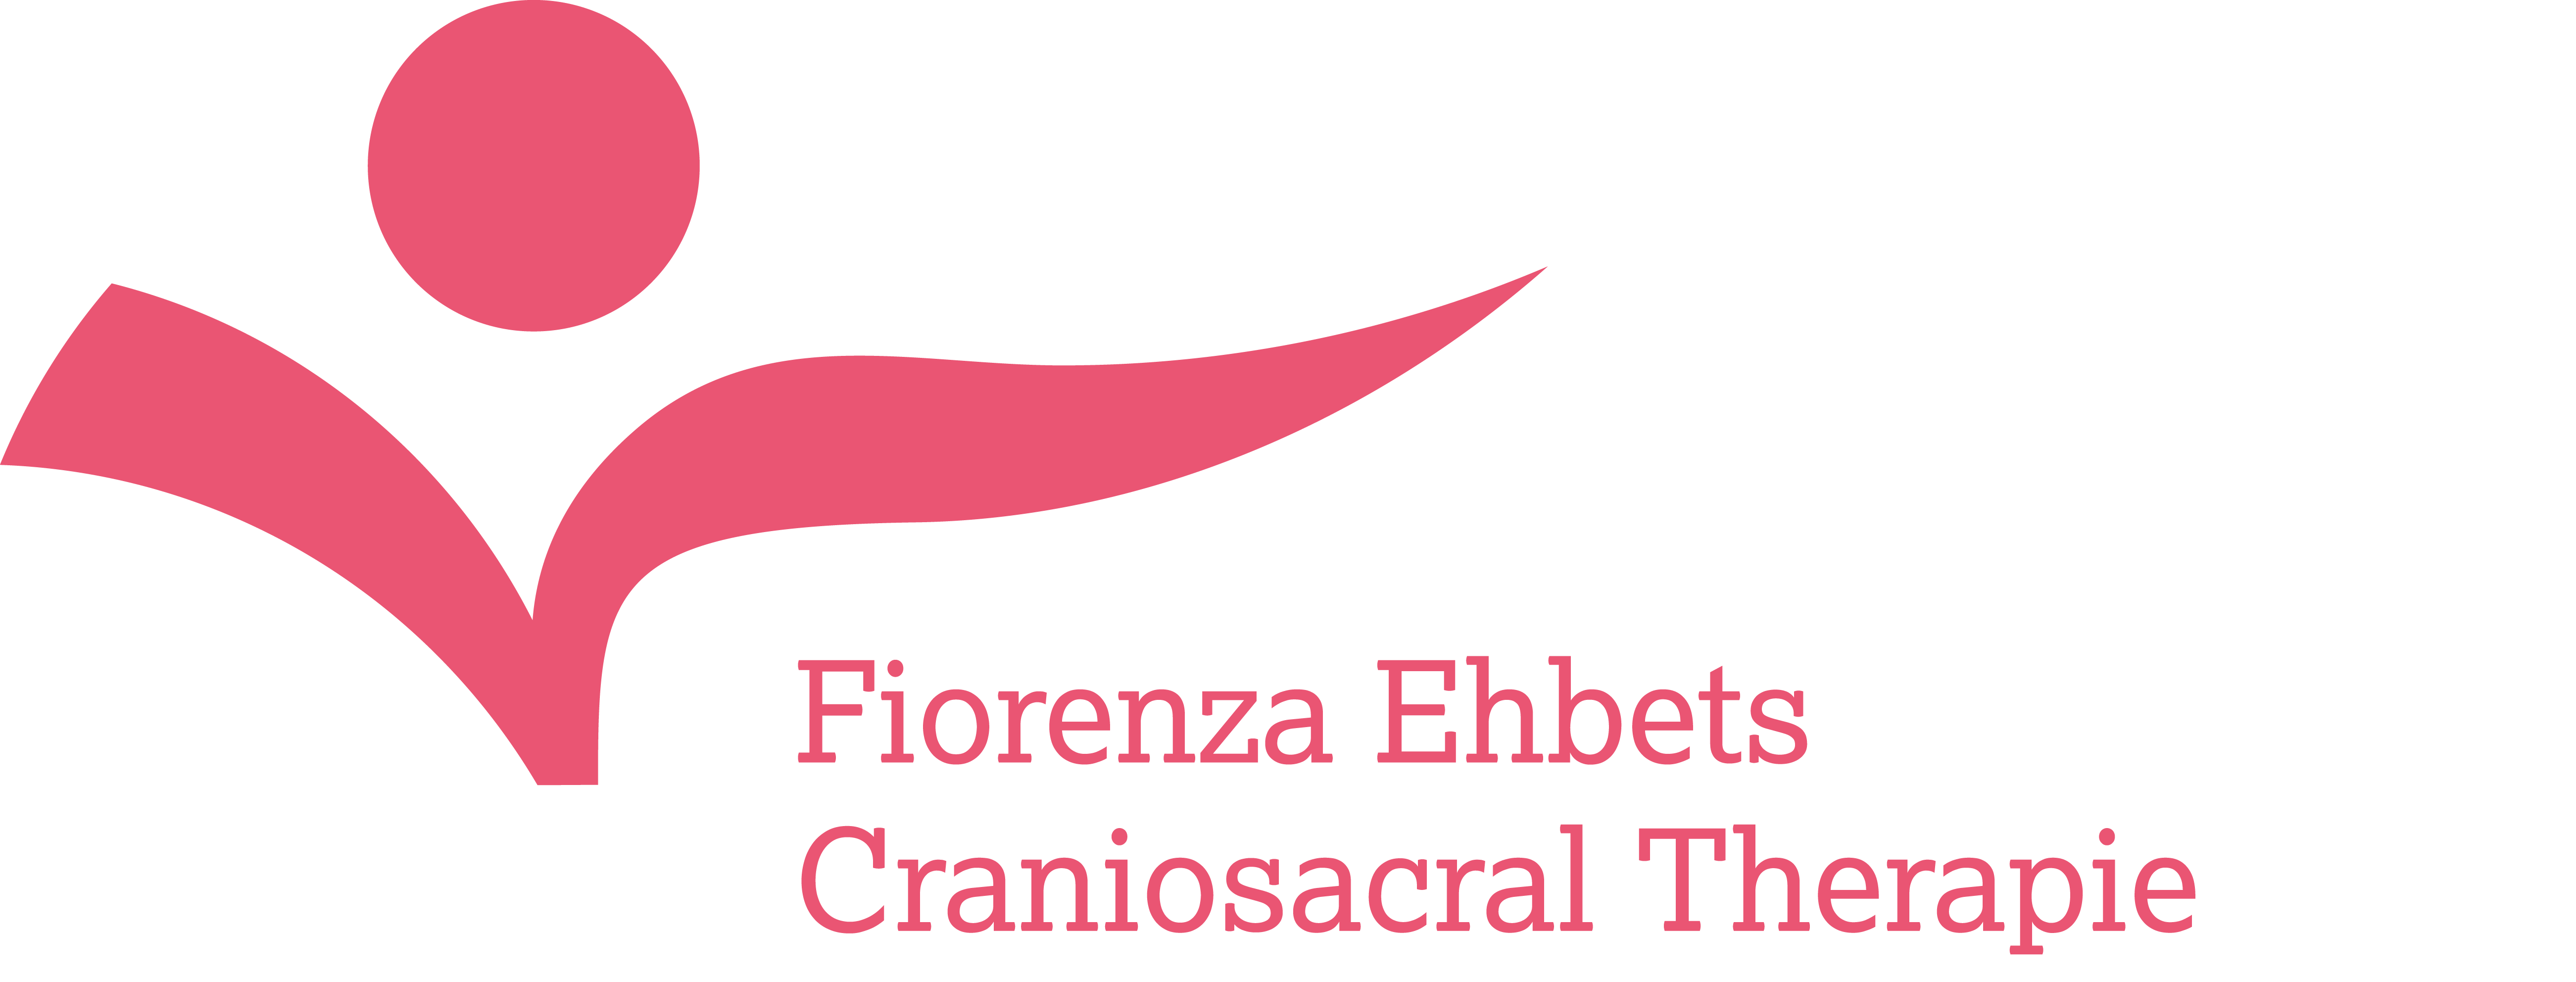 Fiorenza Ehbets – Craniosacral Therapie und Kinesiologie